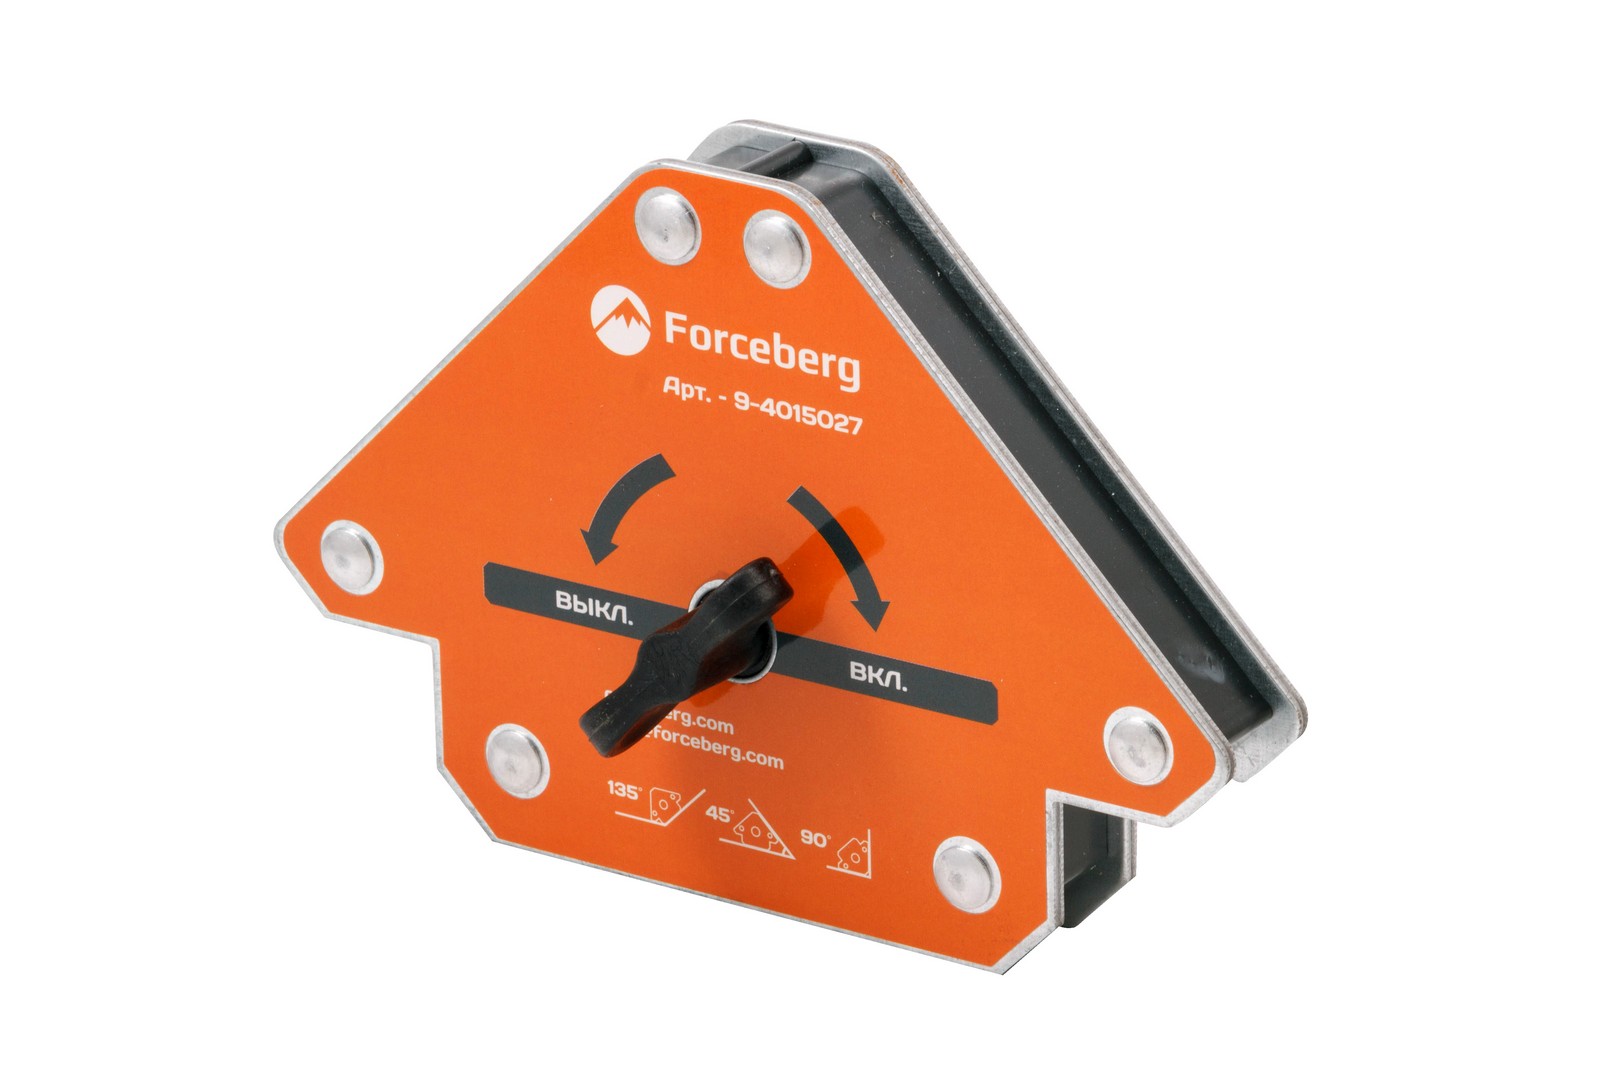 Усиленный отключаемый магнитный уголок Forceberg для сварки и монтажа для 3 углов, 50 кг усиленный магнитный держатель для досок attache